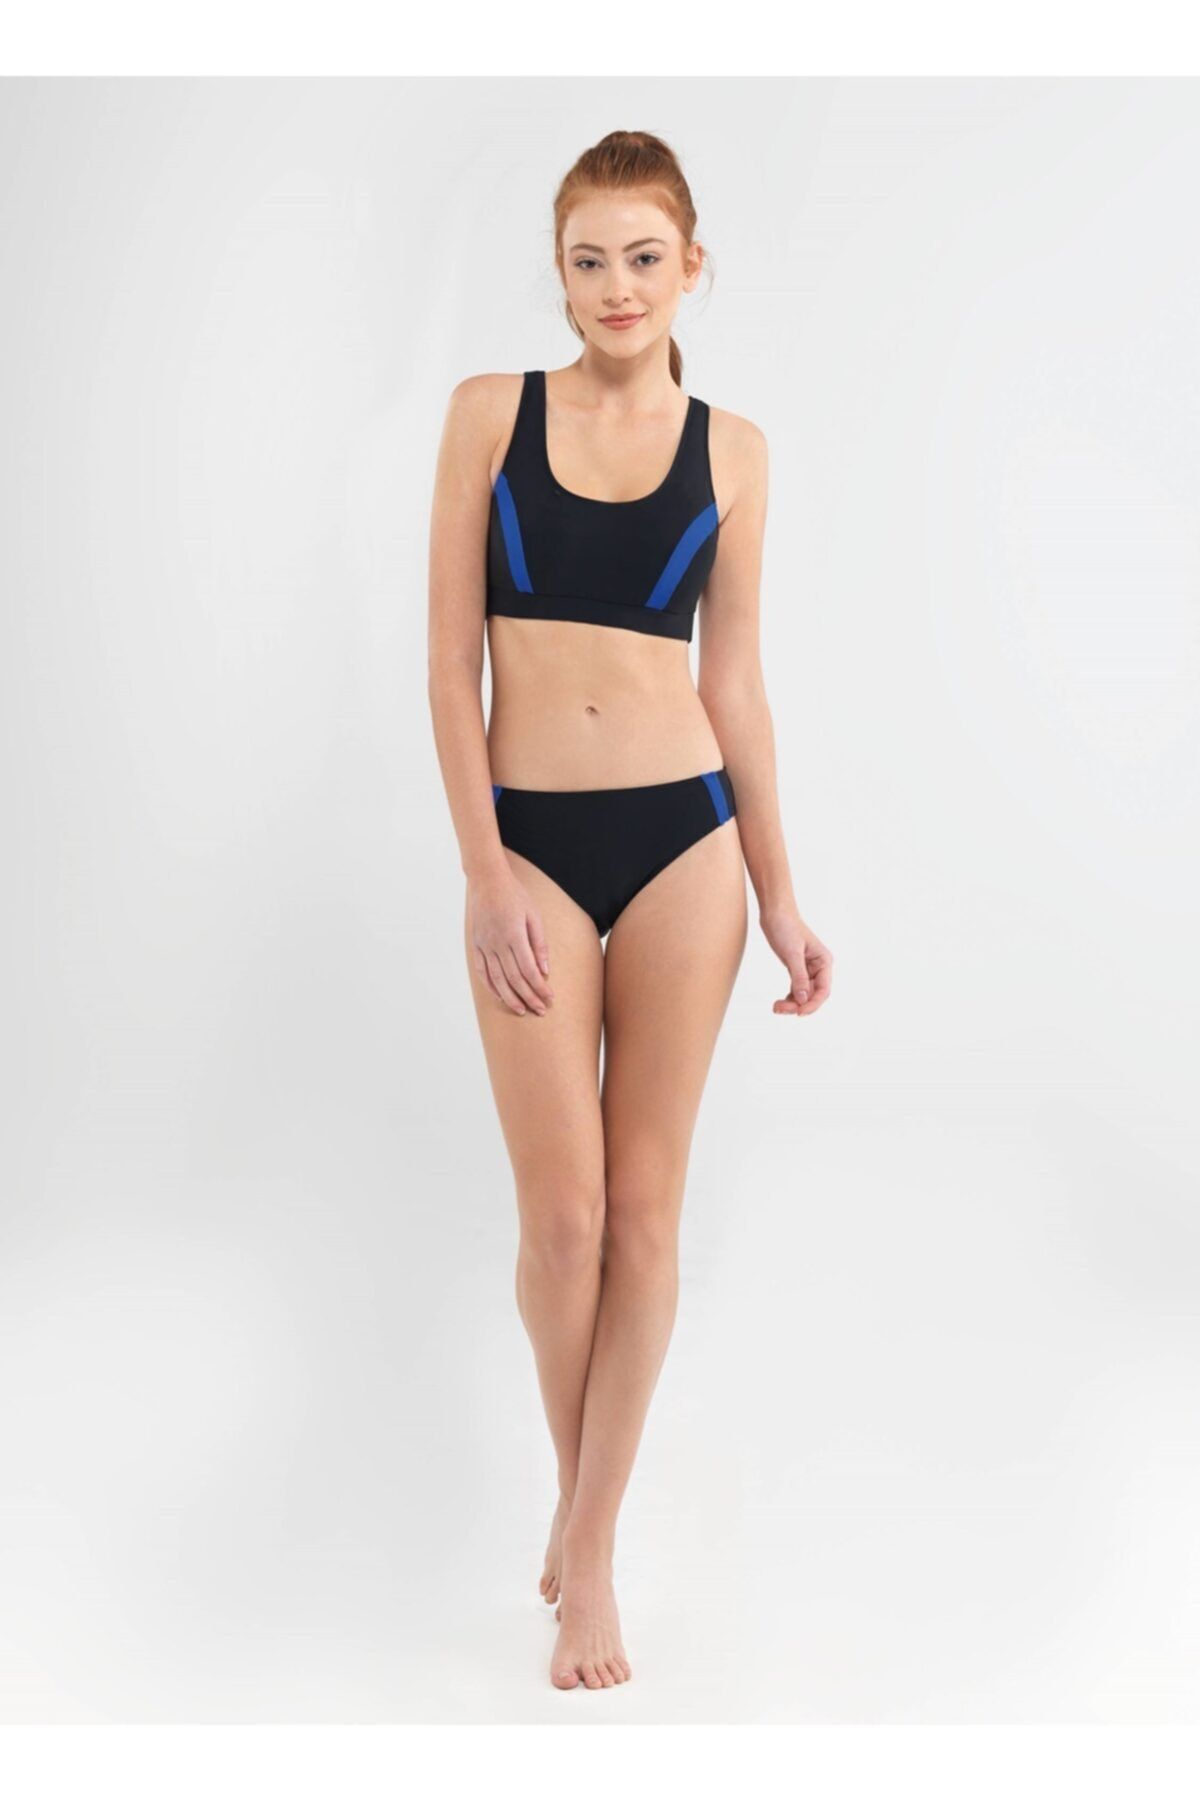 Blackspade Kadın Sporcu Bikini Takımı - 8646 - Siyah